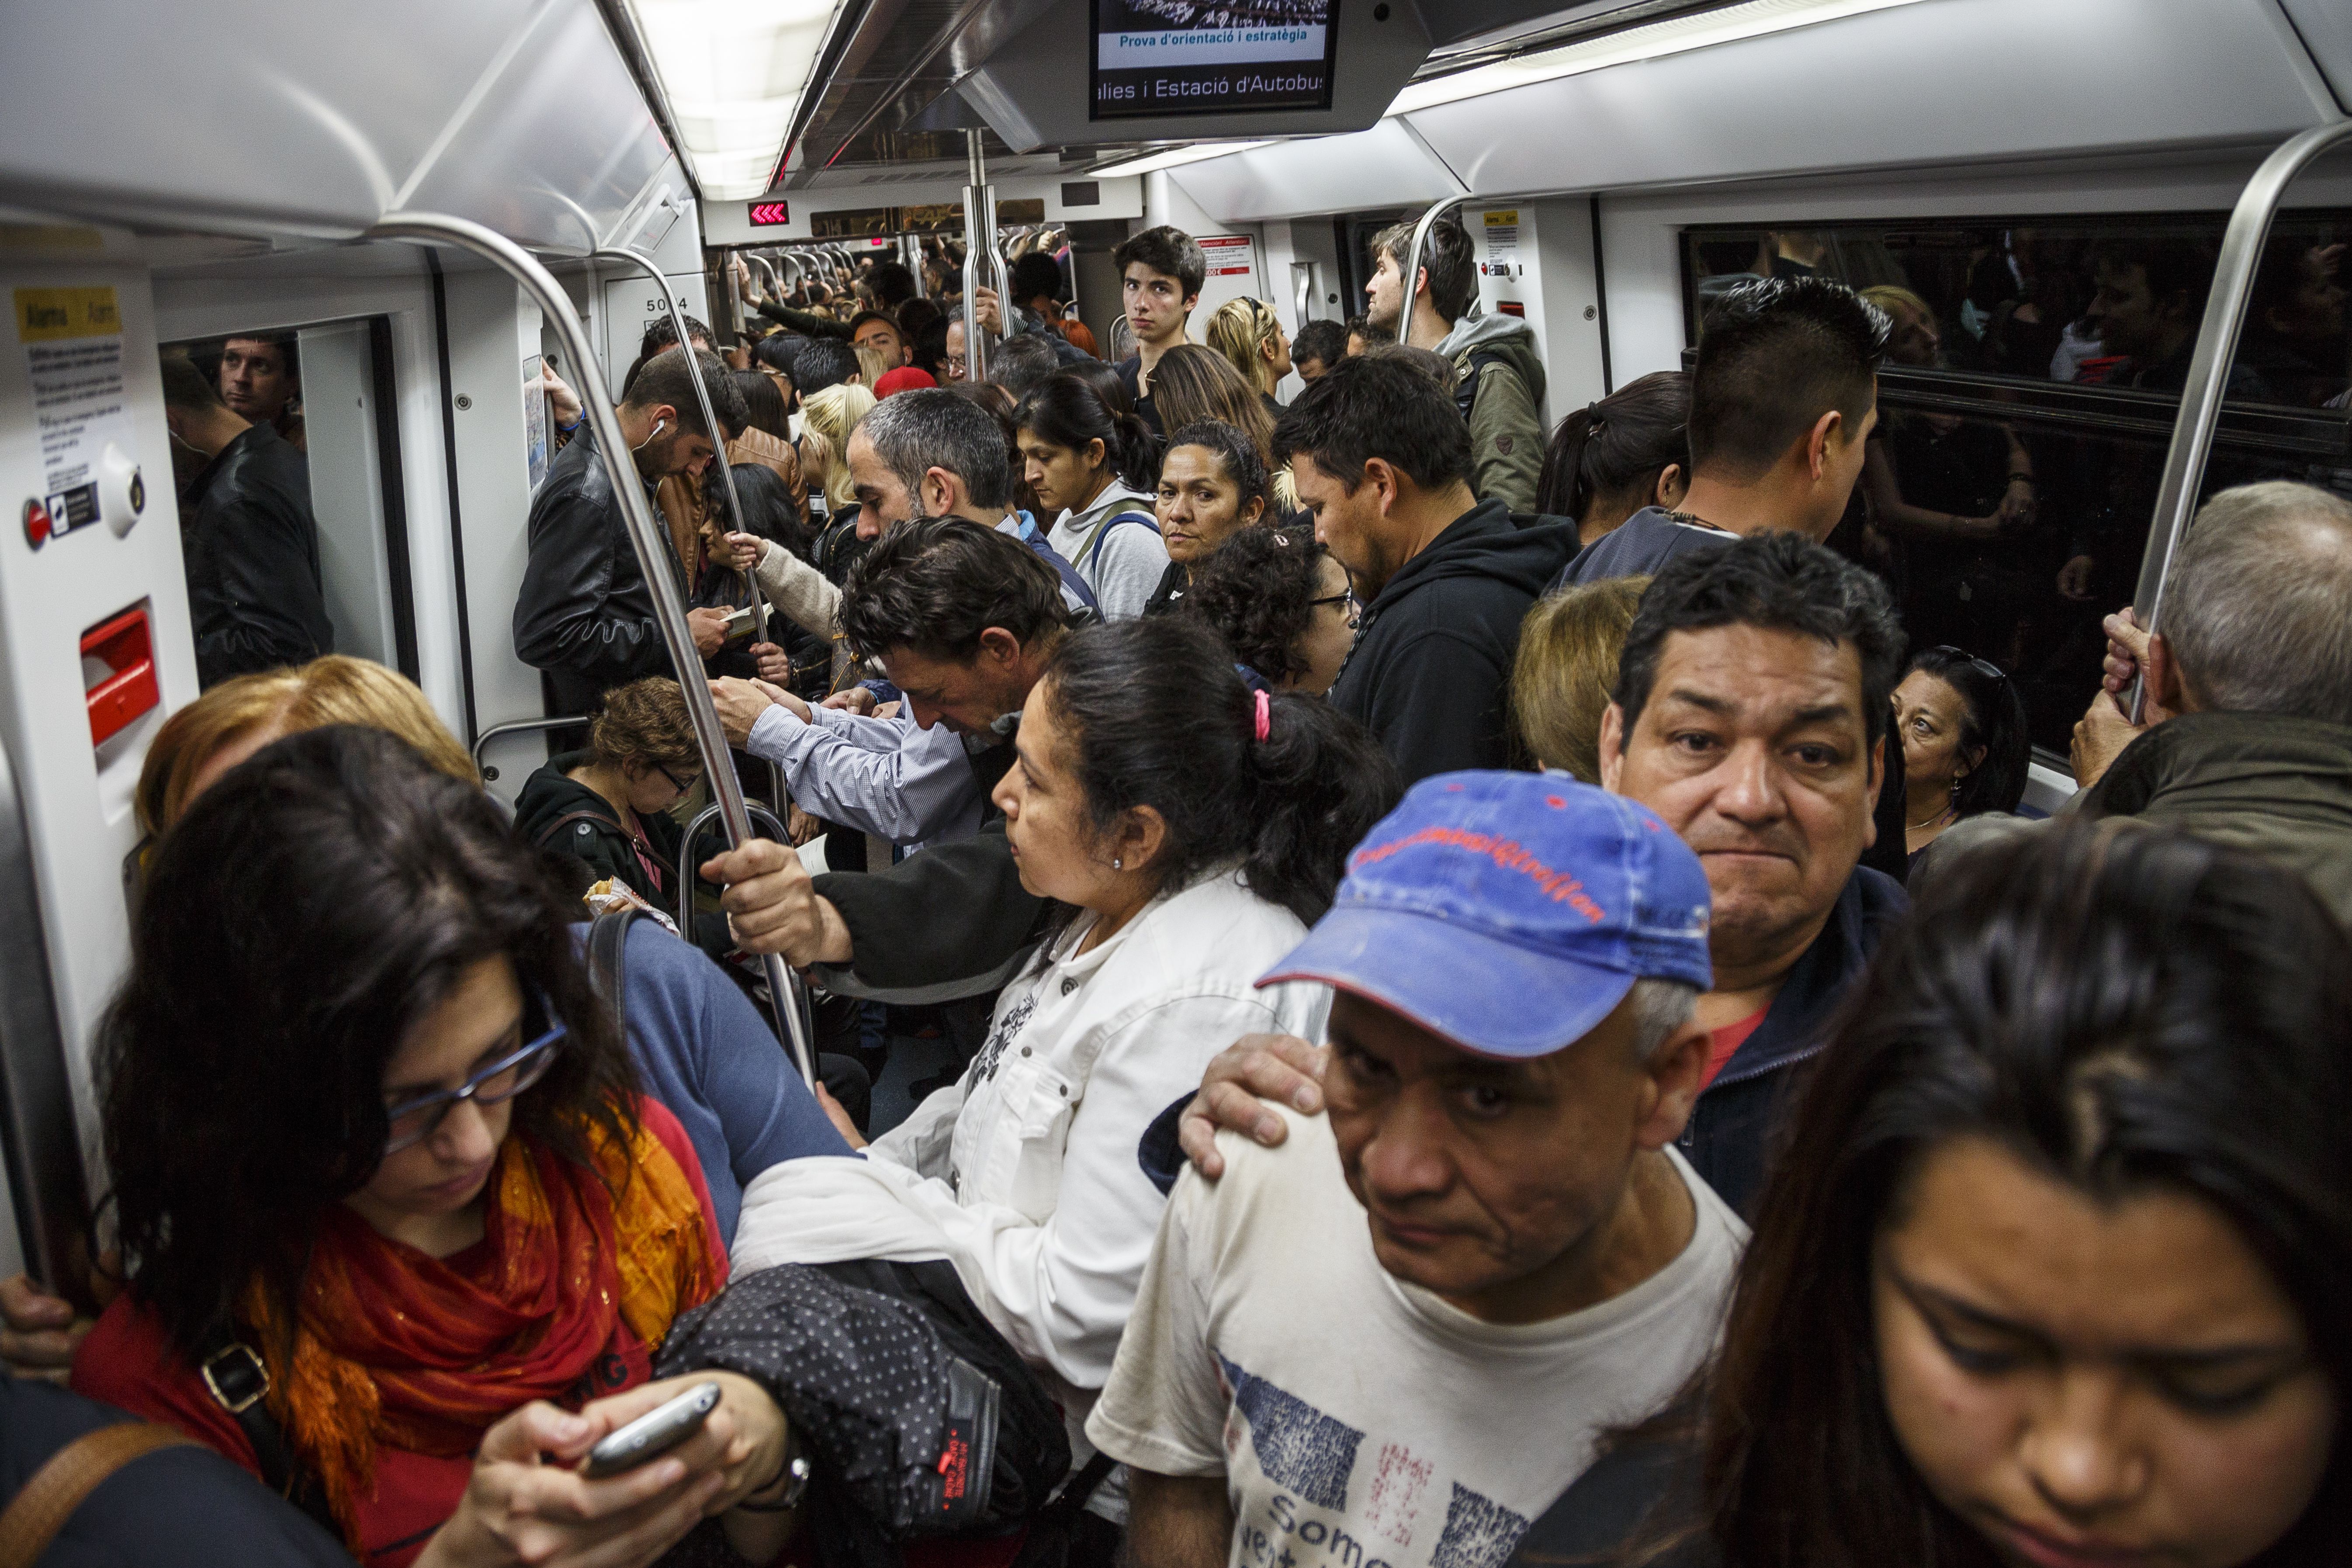 70 carteristas tienen prohibido entrar en el metro